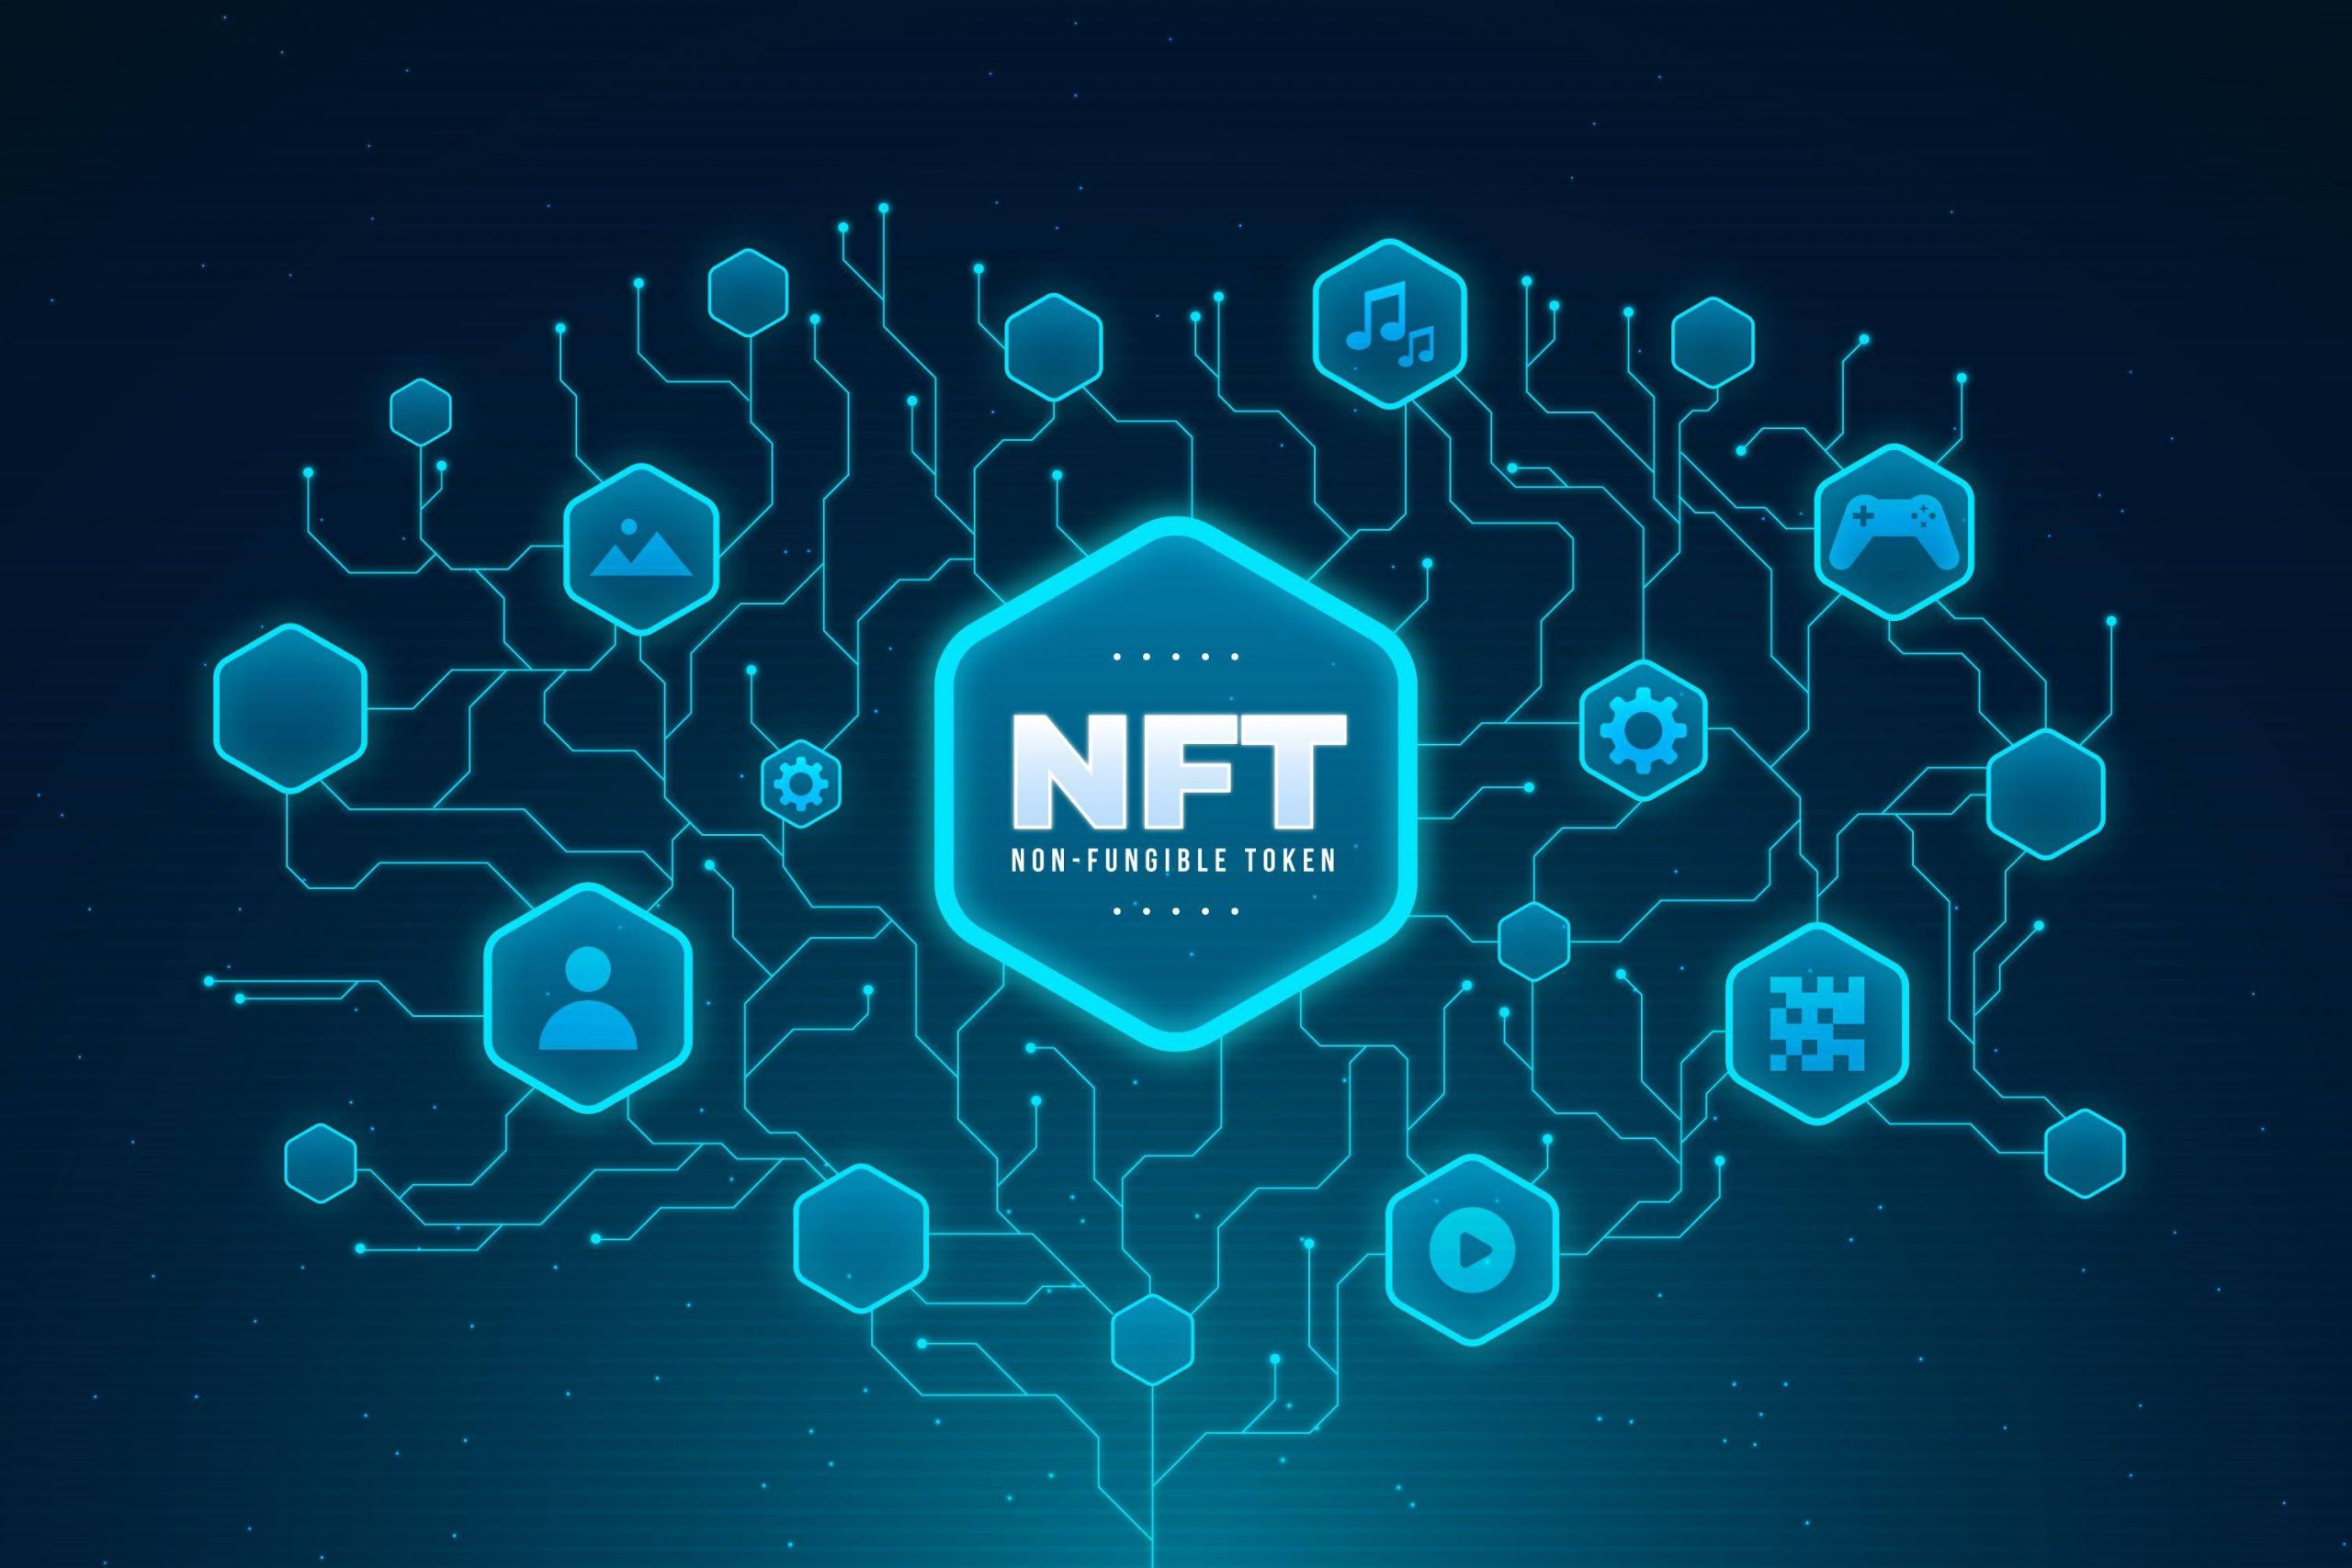 Cómo aprovechar el potencial digital de tu marca con el marketing de NFT